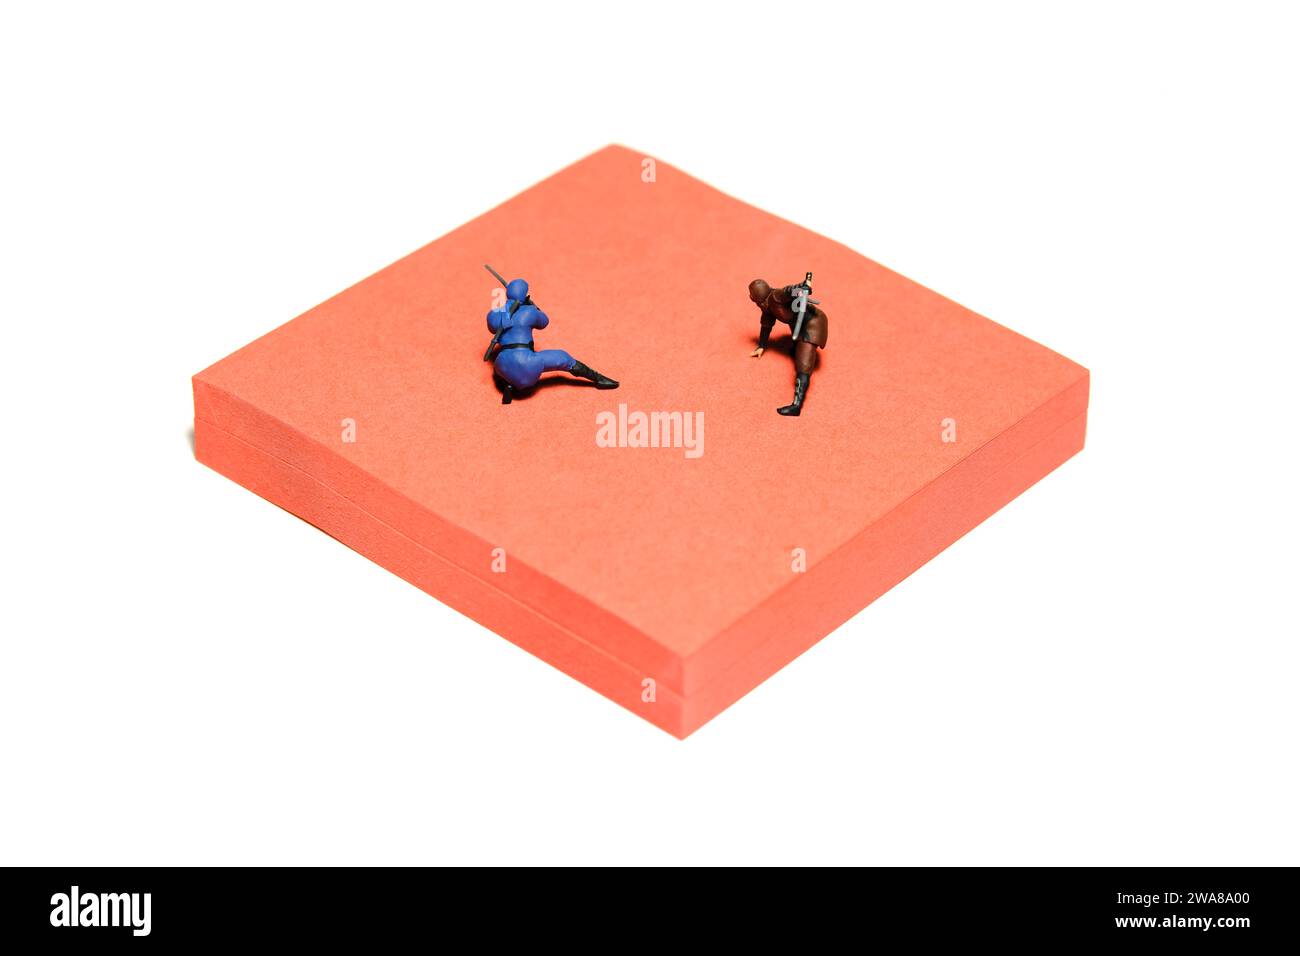 Fotografía creativa de figuras de juguete de personas en miniatura. Instalación de notas adhesivas. Dos ninja luchando en la arena de la esterilla roja. Foto de imagen Foto de stock